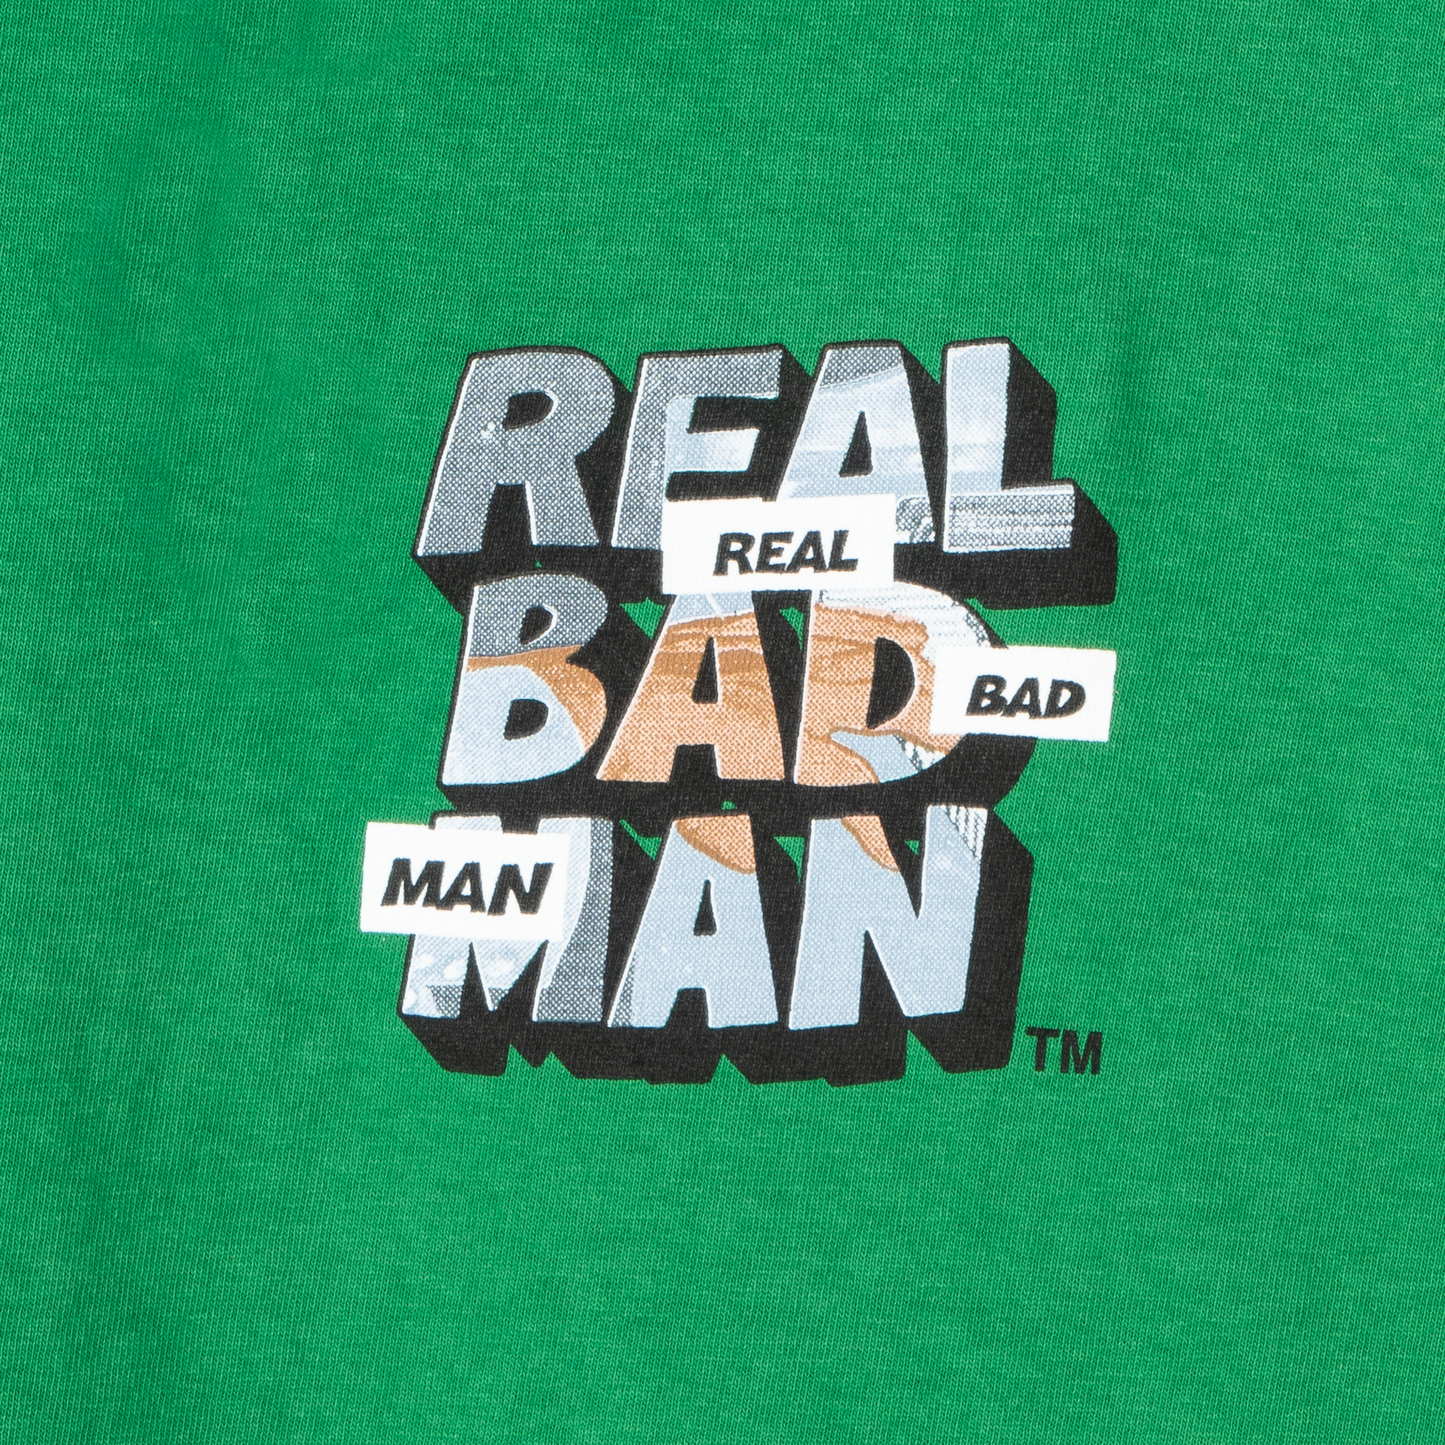 Real Bad Man Piano Man LS T-Shirt